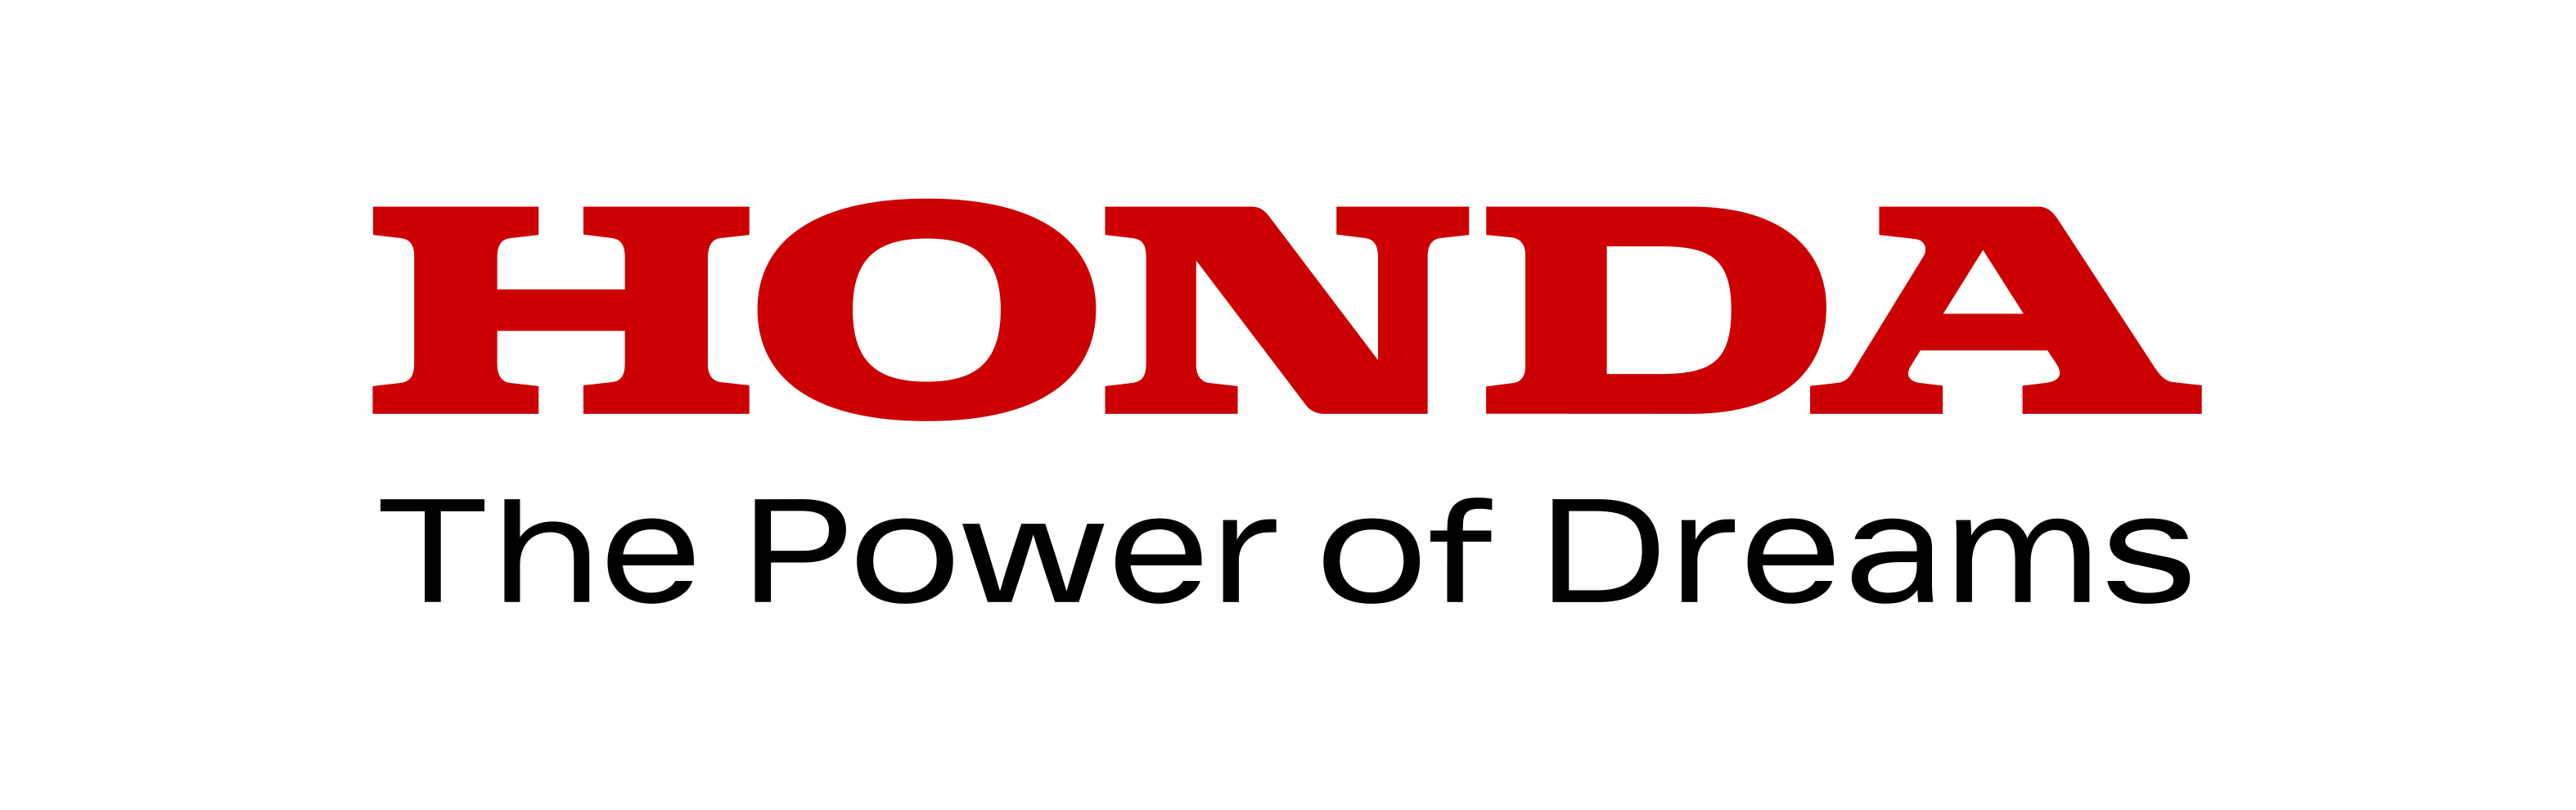 Honda Power of Dreams – logo